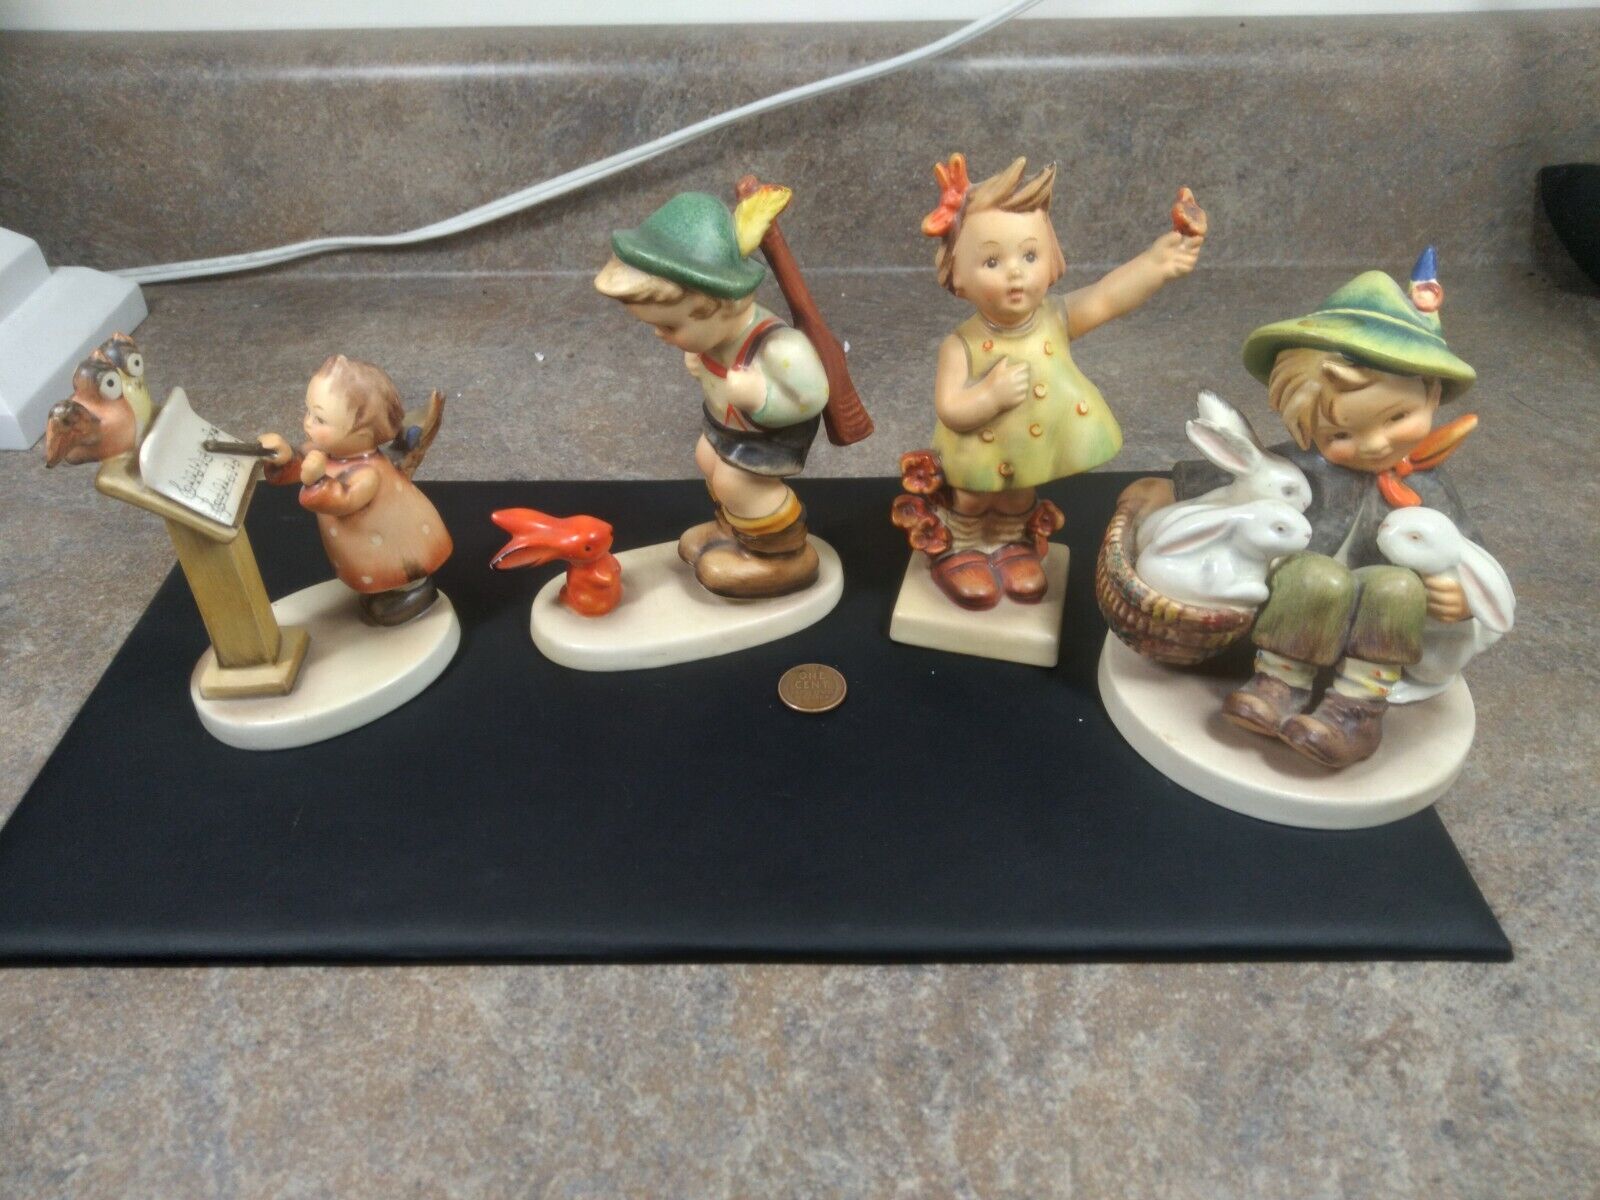 Lot of 4 Vintage Goebel Hummel Figurines #169, 58/1, 6/0, 72 All TMK 3